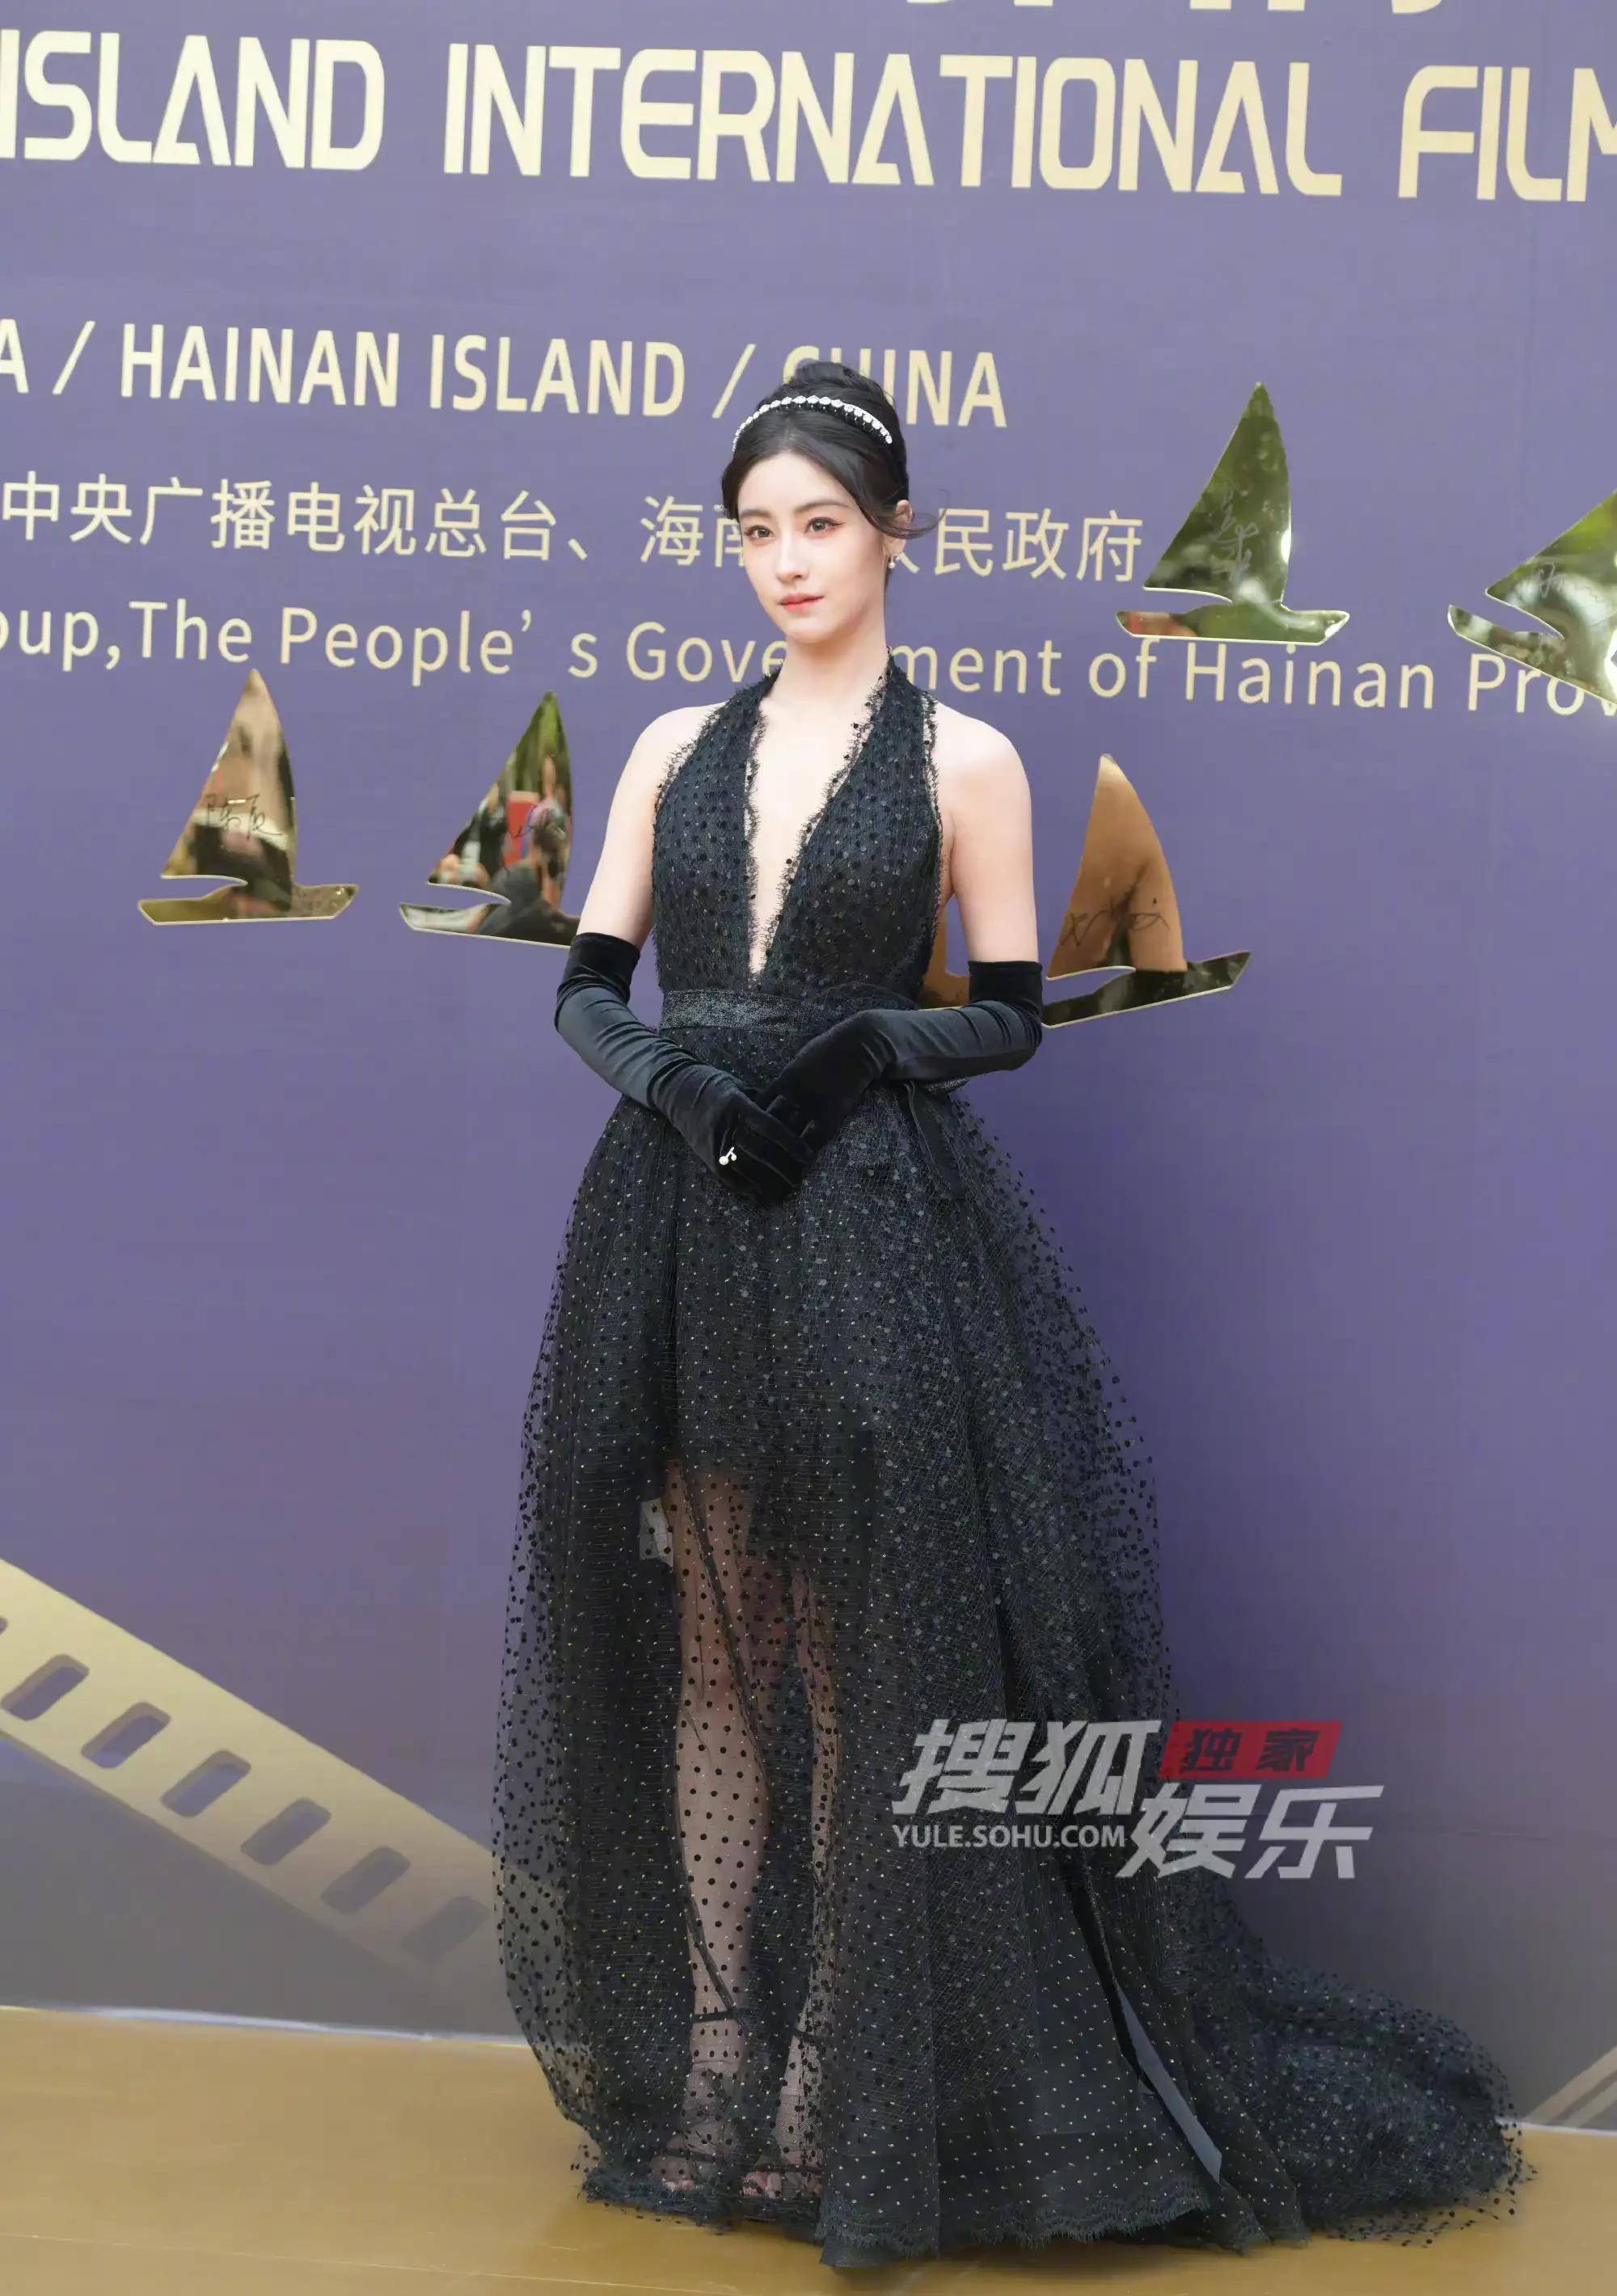 海南岛国际电影节众女星红毯造型,赵雅芝赢麻了